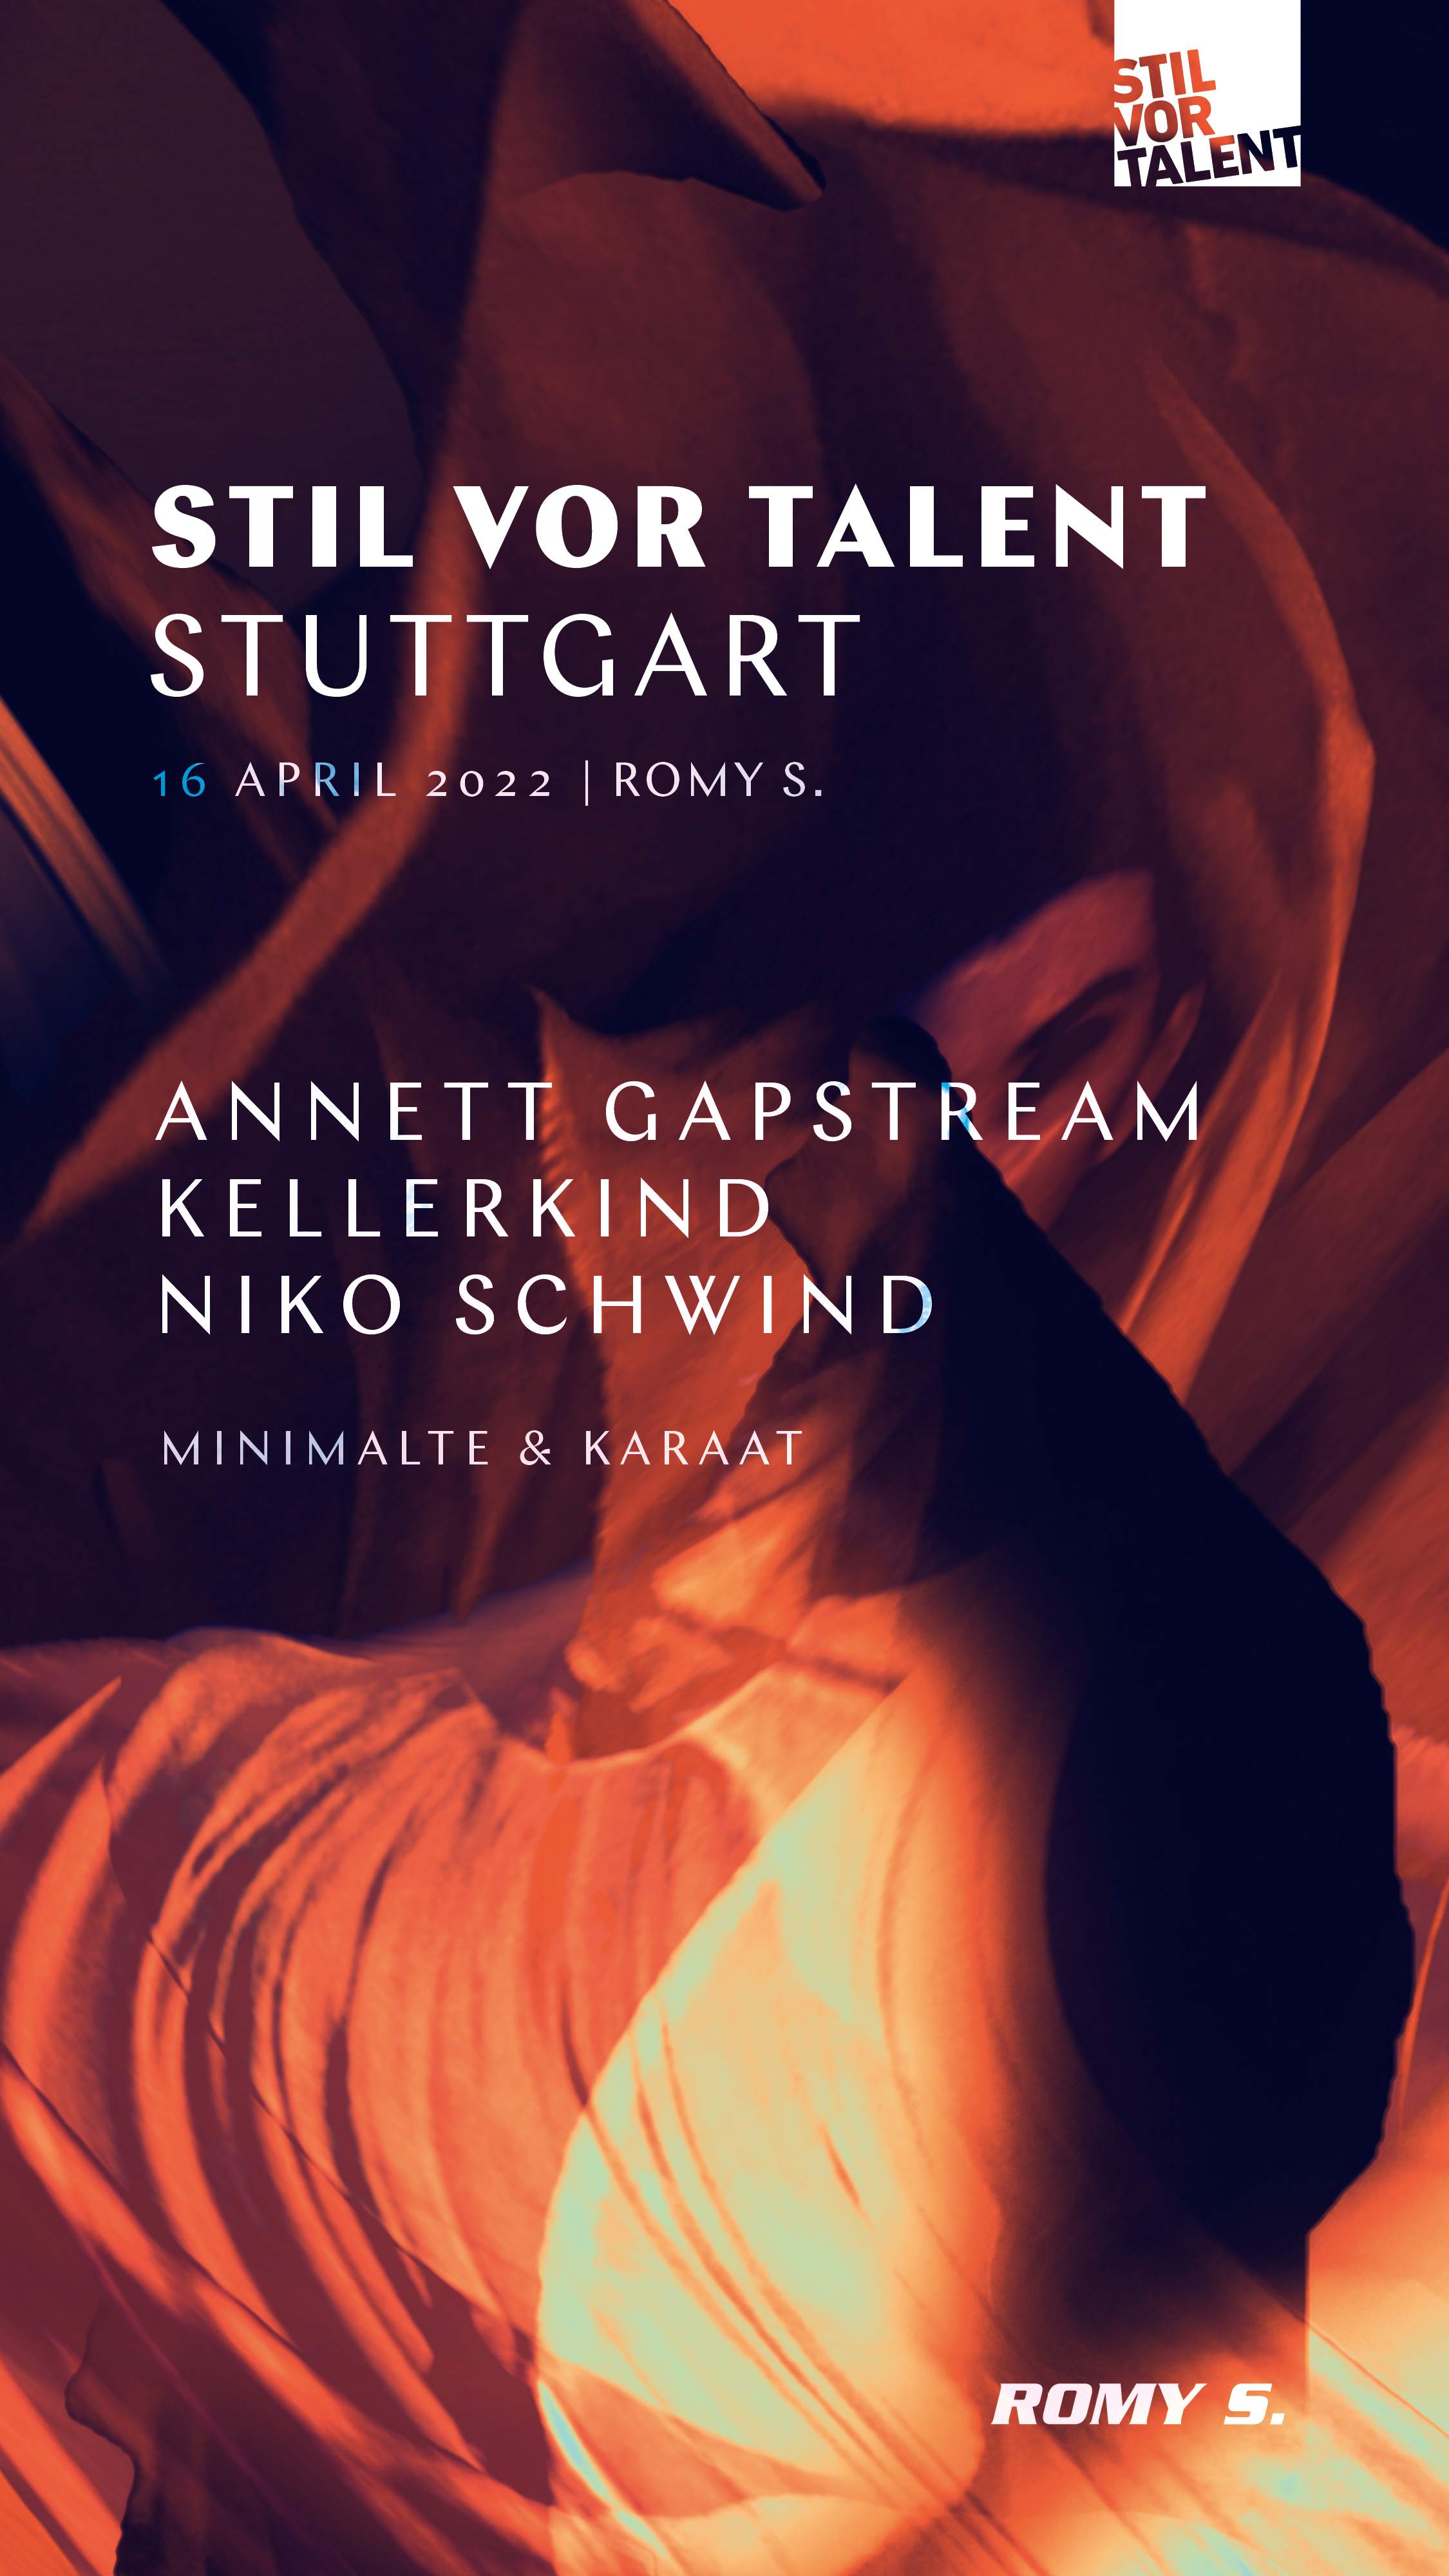 Annett Gapstream, Kellerkind and Niko Schwind - フライヤー表